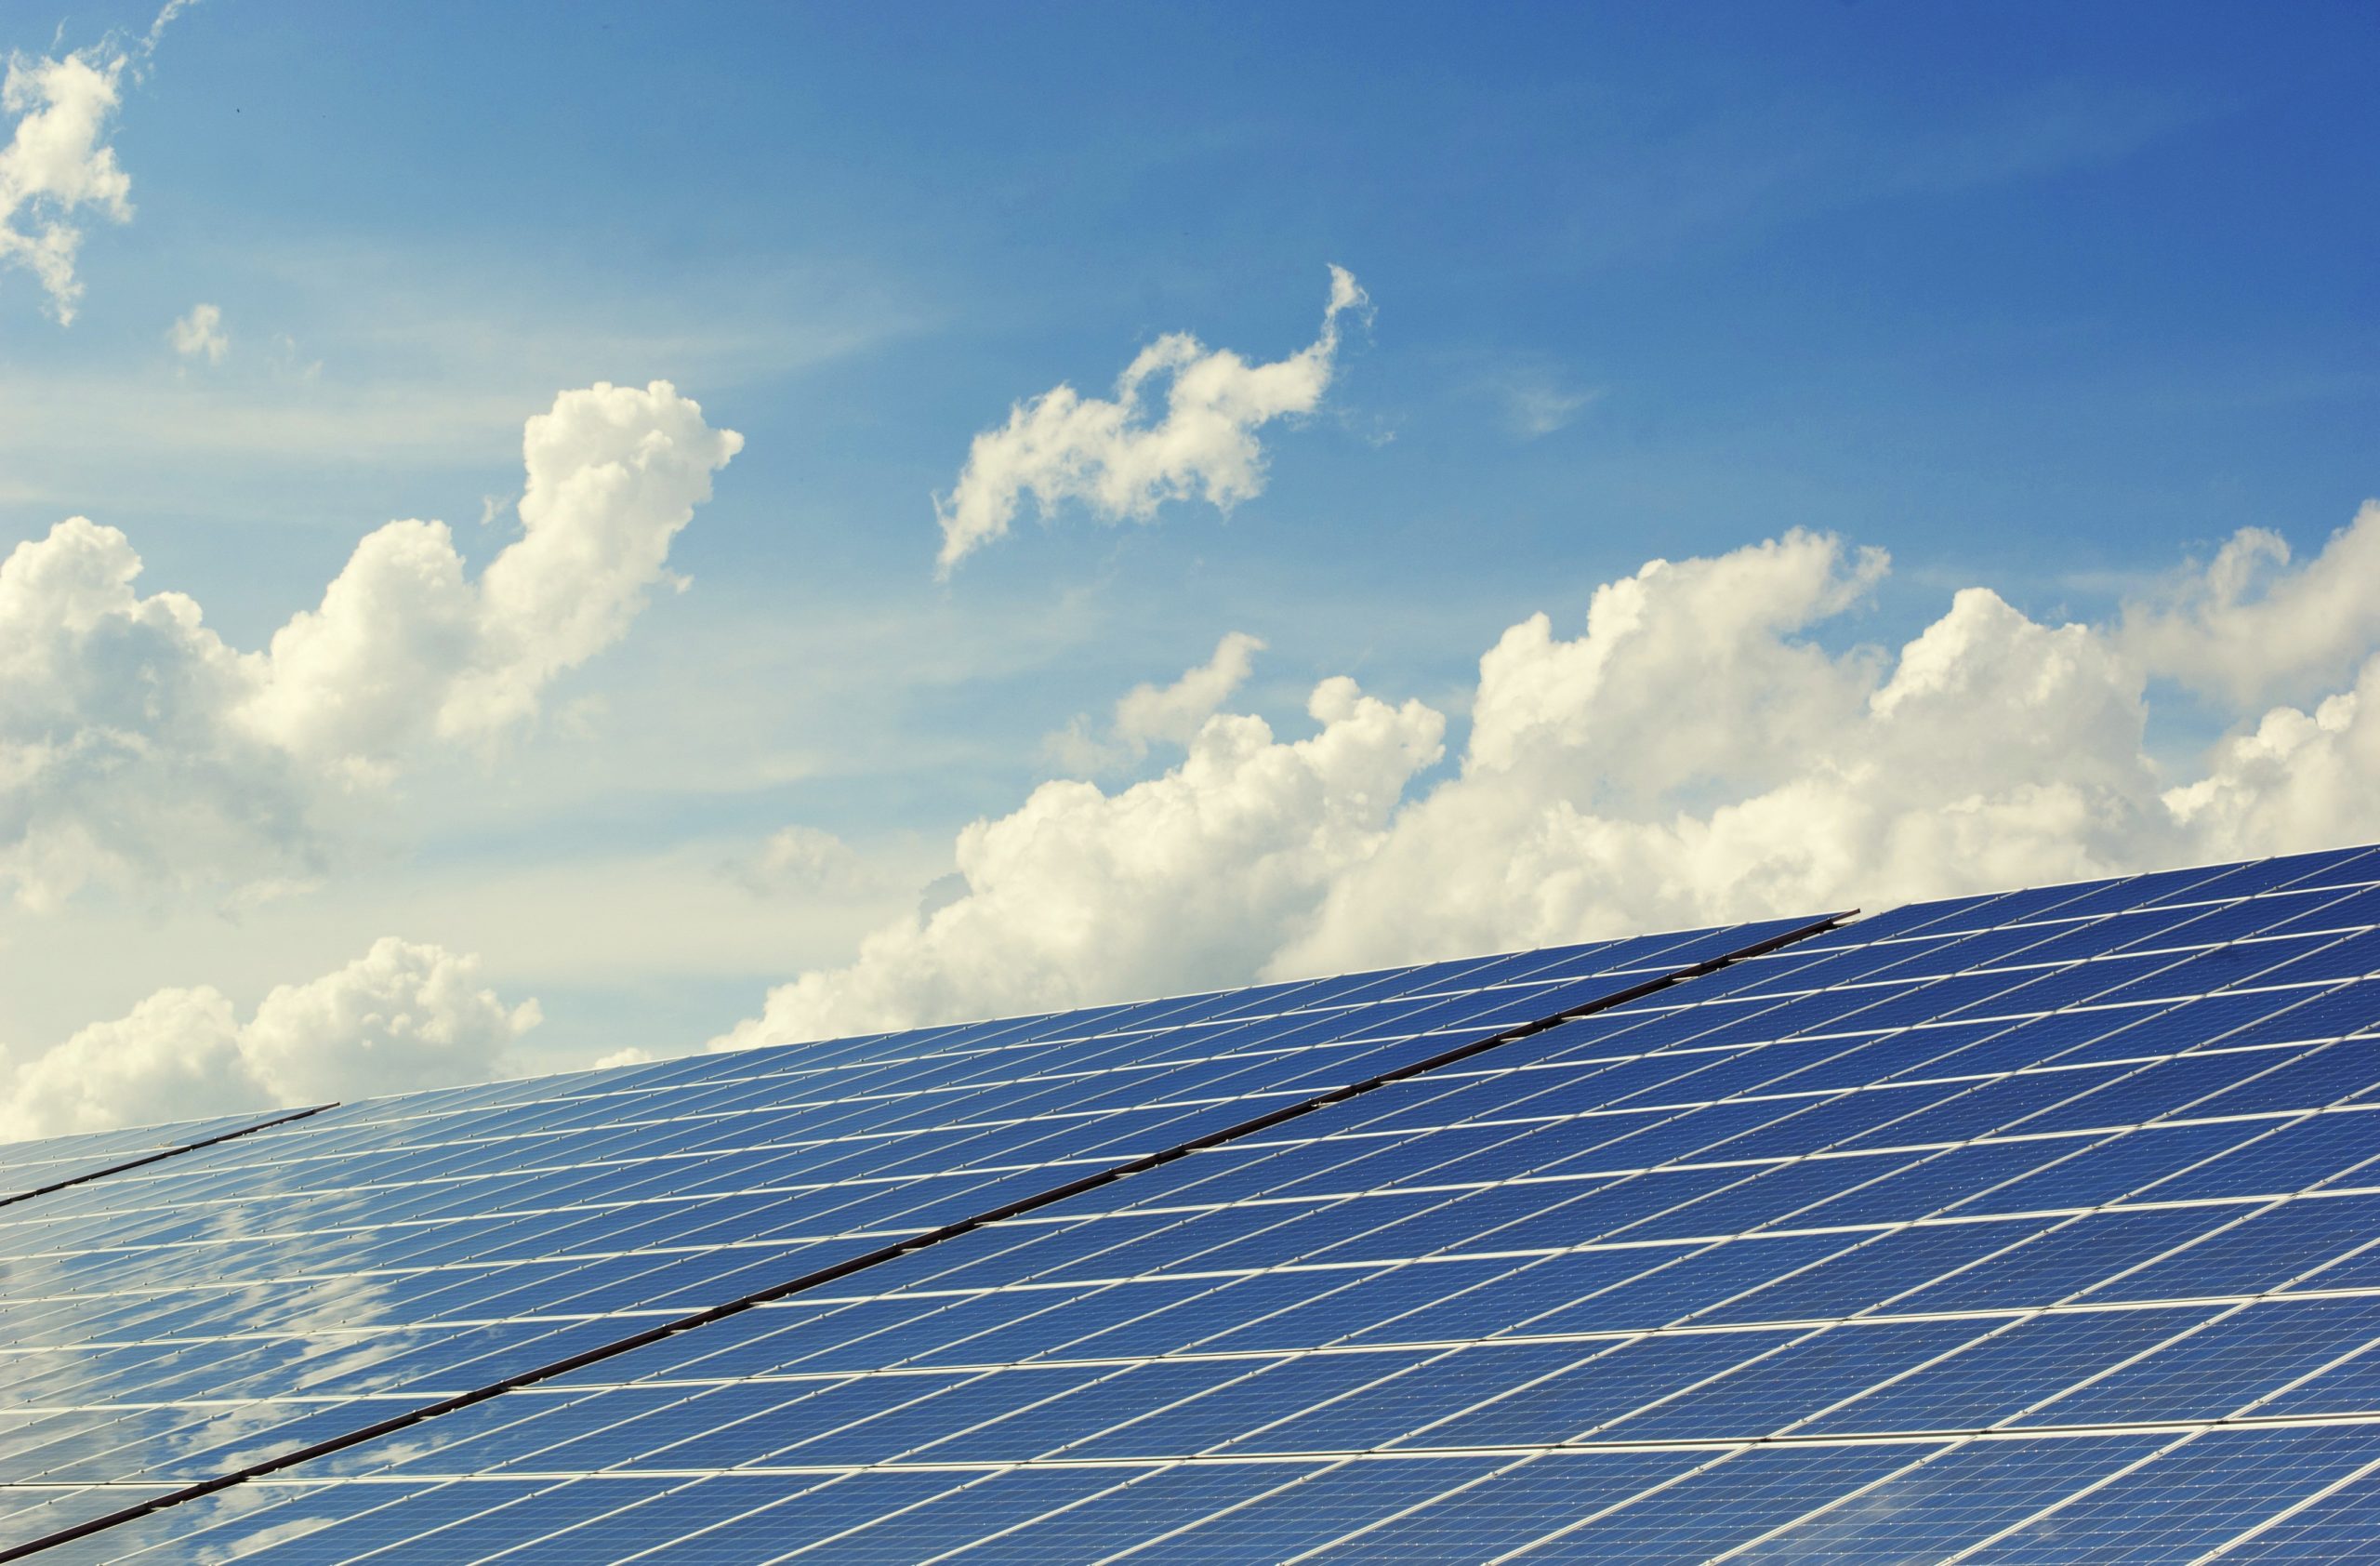 La fotovoltaica instala en 2020 más potencia que en 2008